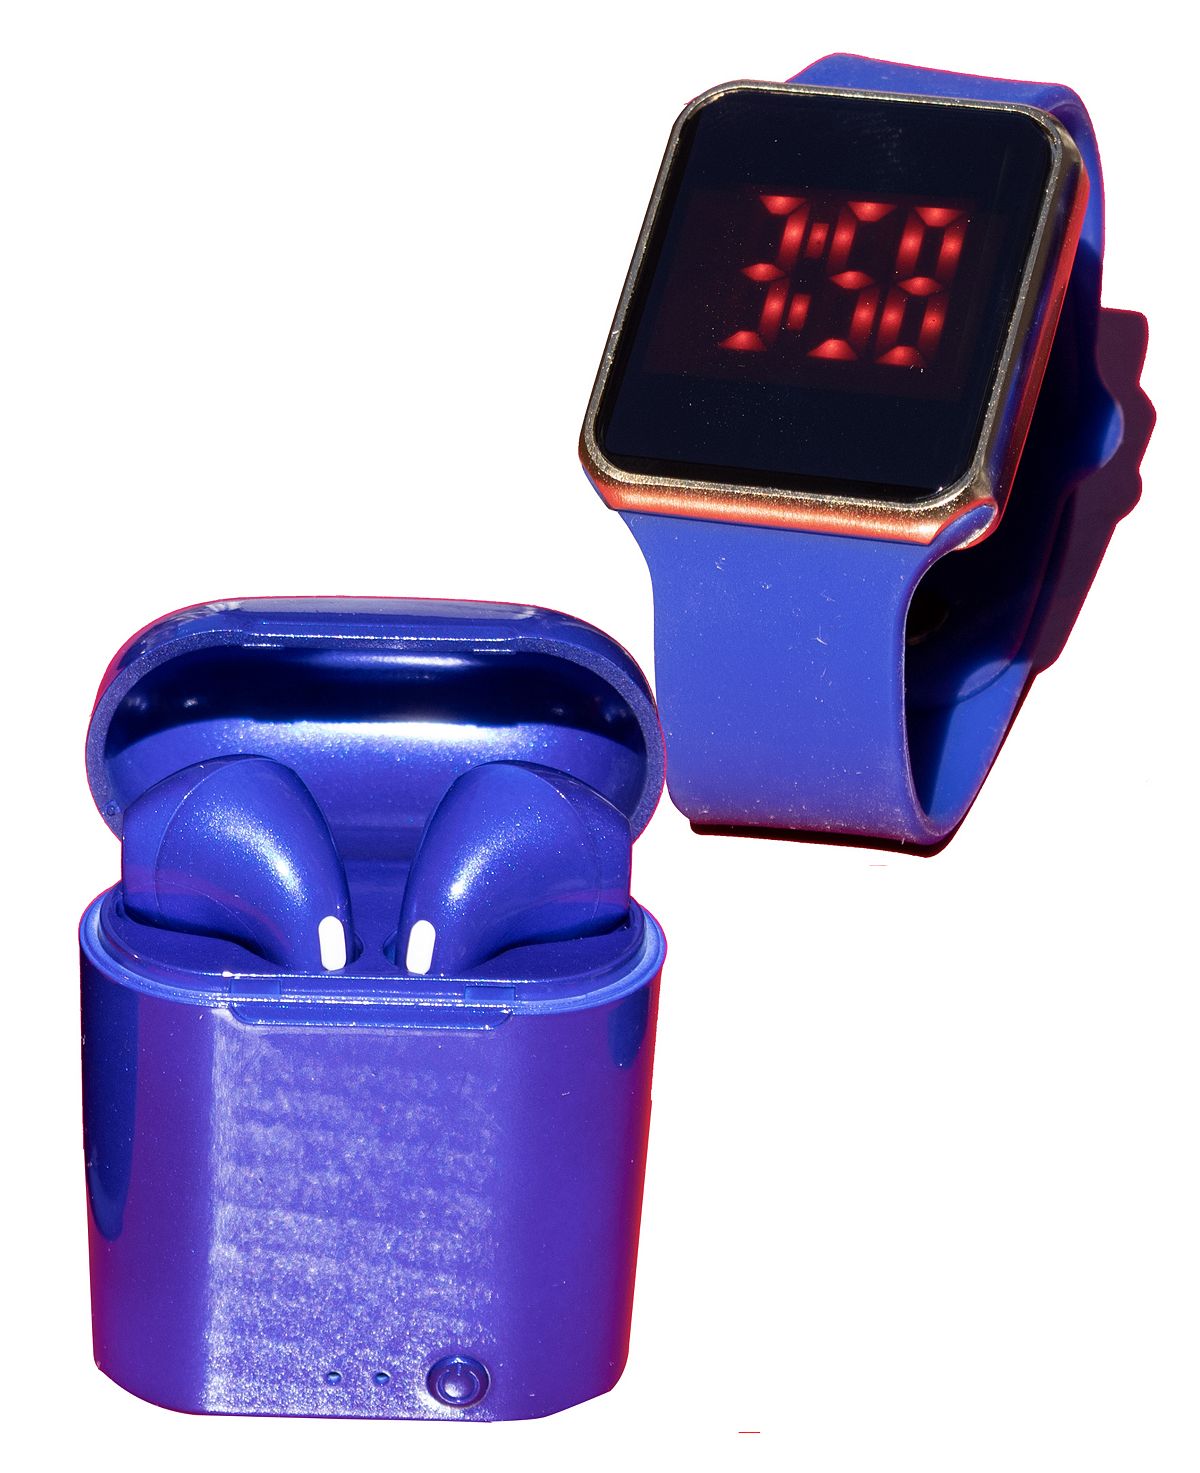 Унисекс светодиодные сенсорные часы и беспроводные наушники с портативным чехлом для зарядки Ztech серьги blue gold